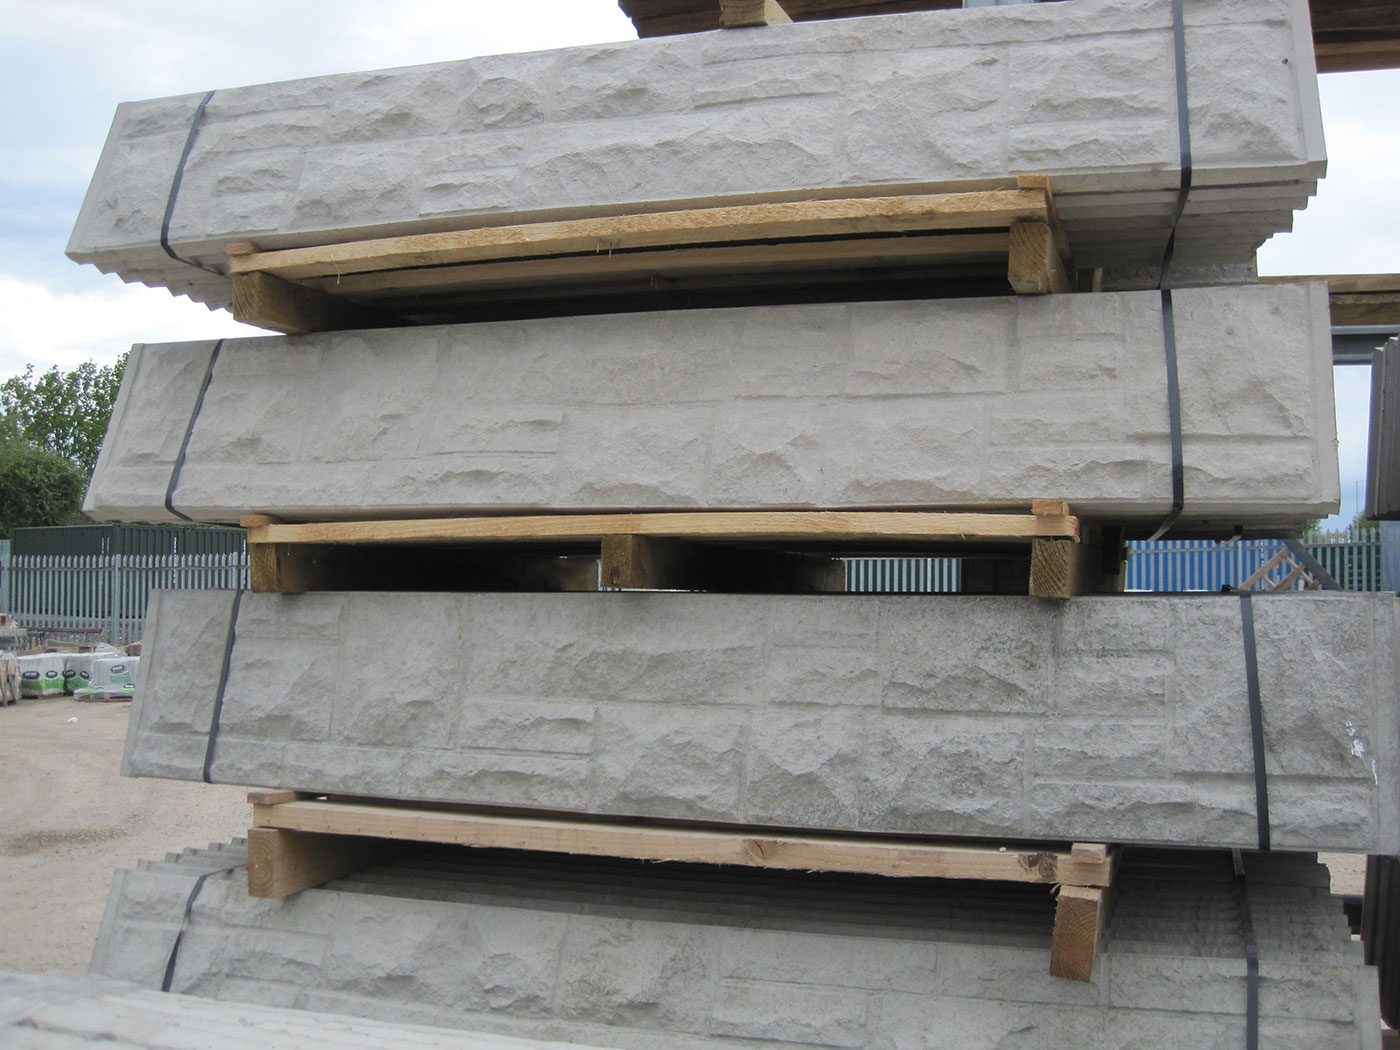 Concrete base boards